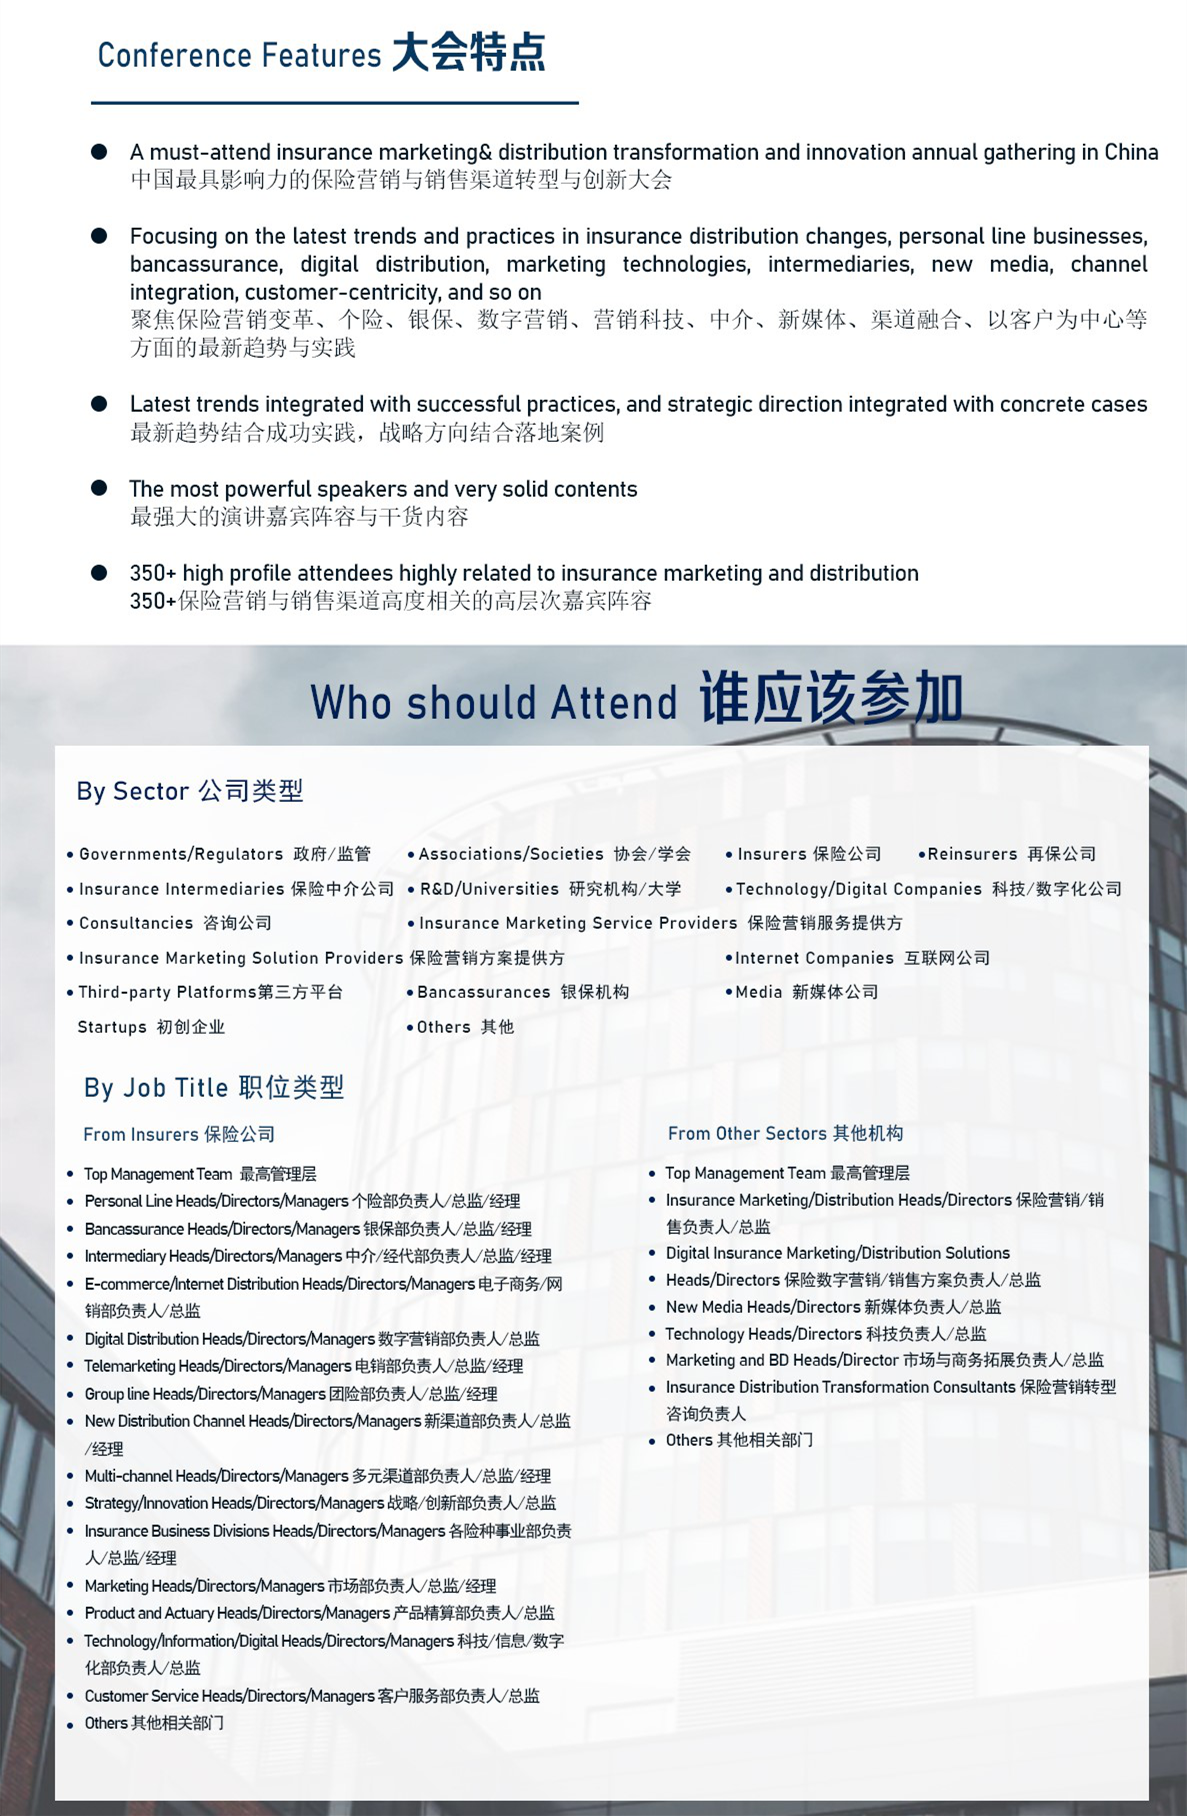 2021中国保险营销与渠道创新峰会